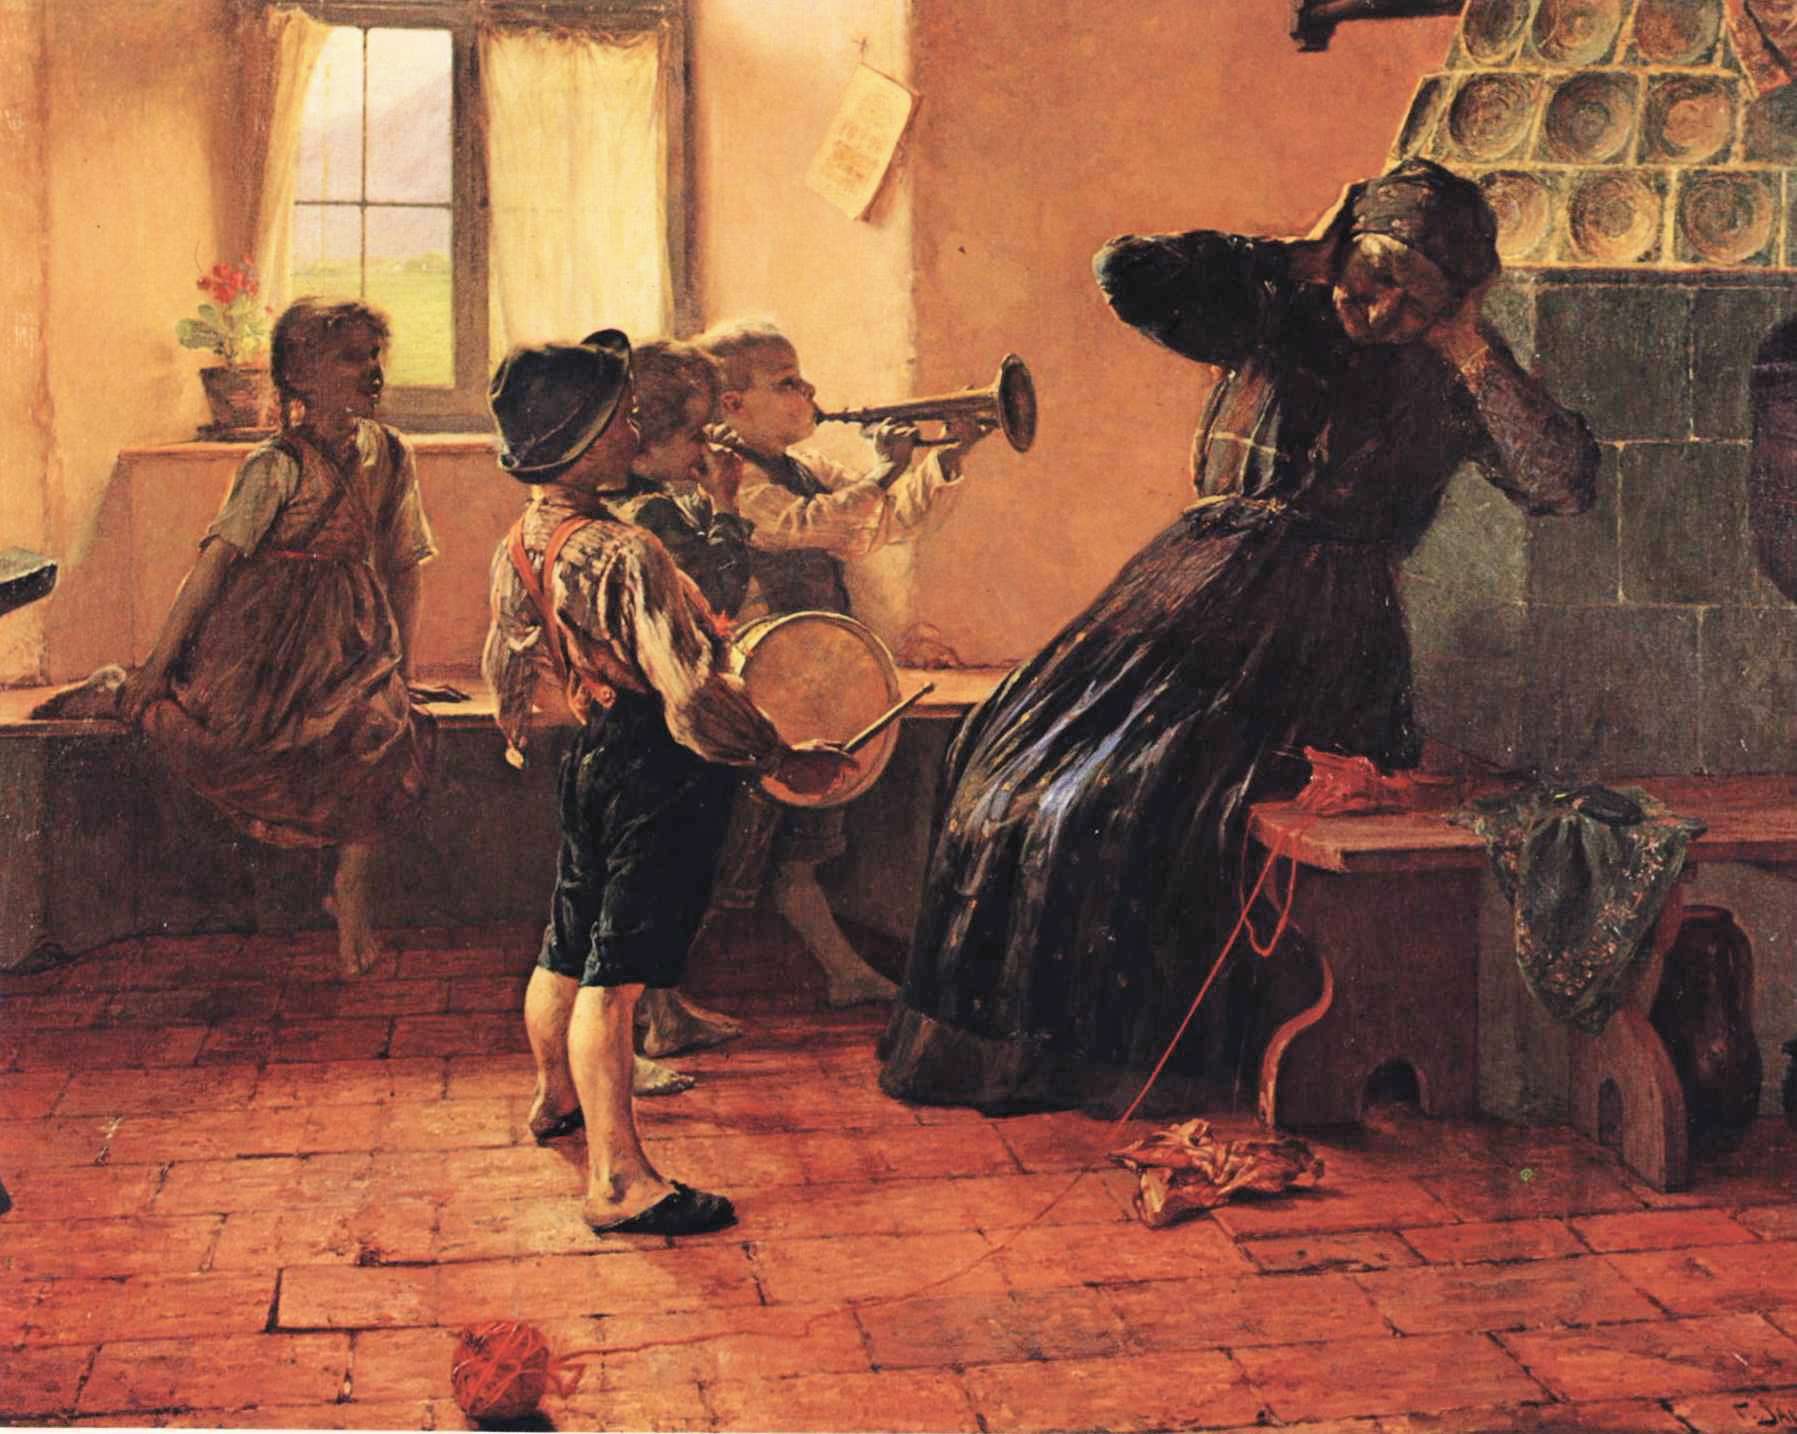 Γ. Ιακωβίδης, Παιδική Συναυλία (1894). Λάδι σε μουσαμά, 176 εκ. x 250 εκ. Εθνική Πινακοθήκη